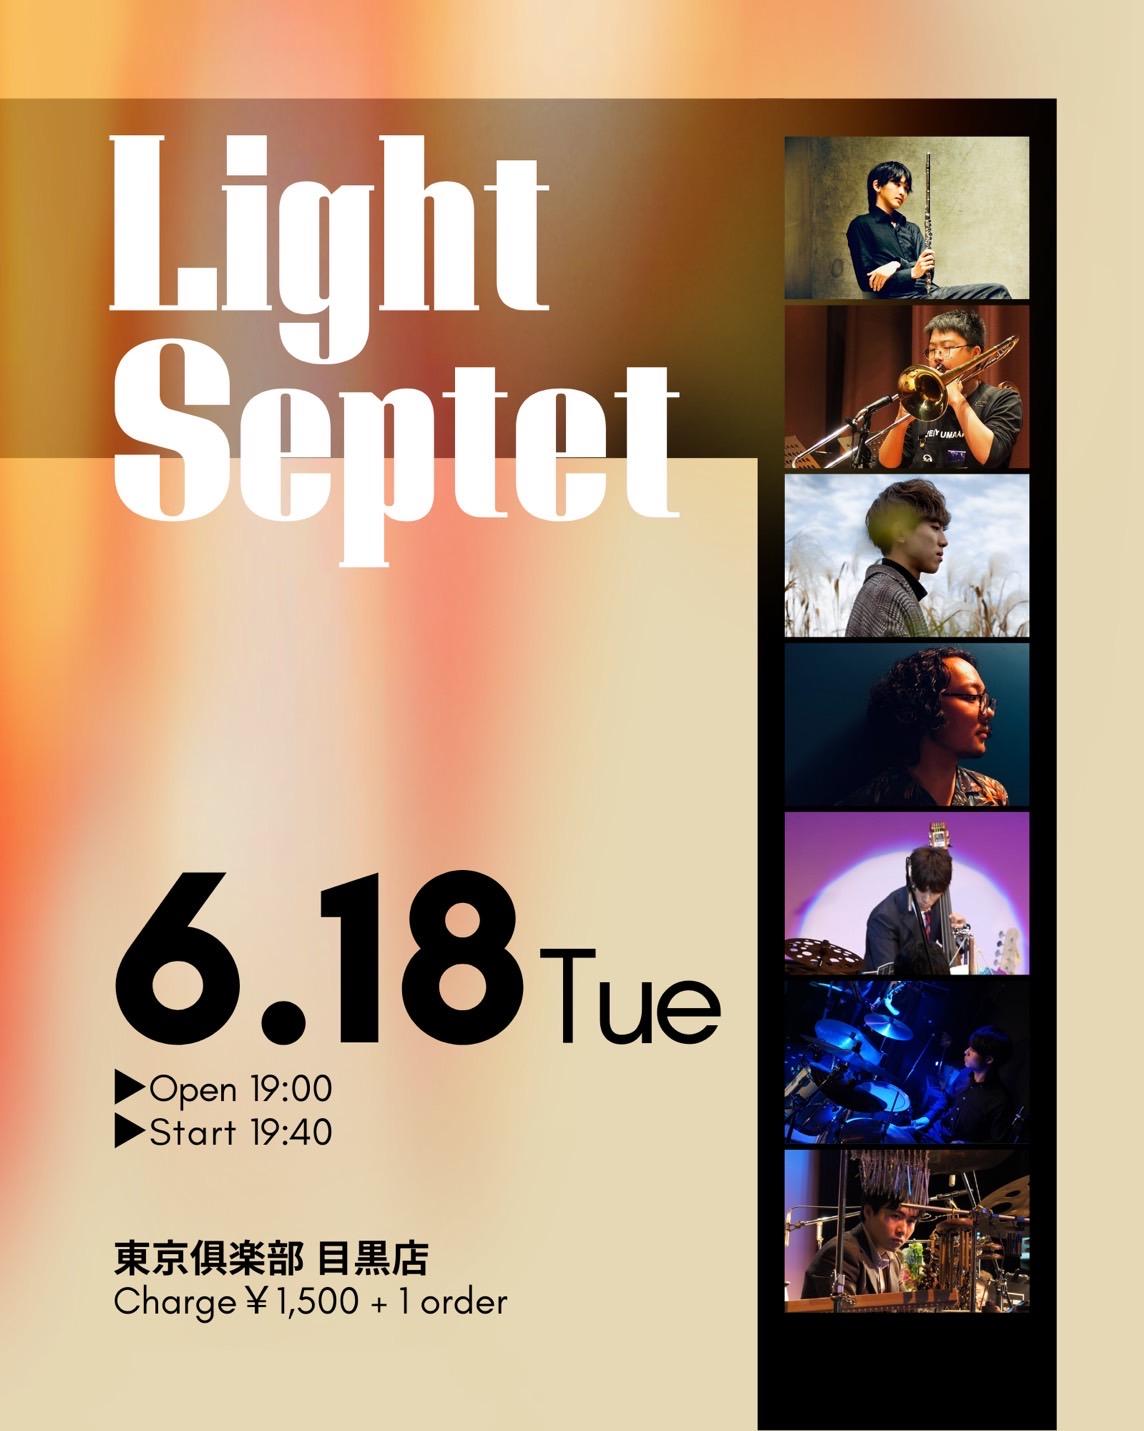 Light Septet